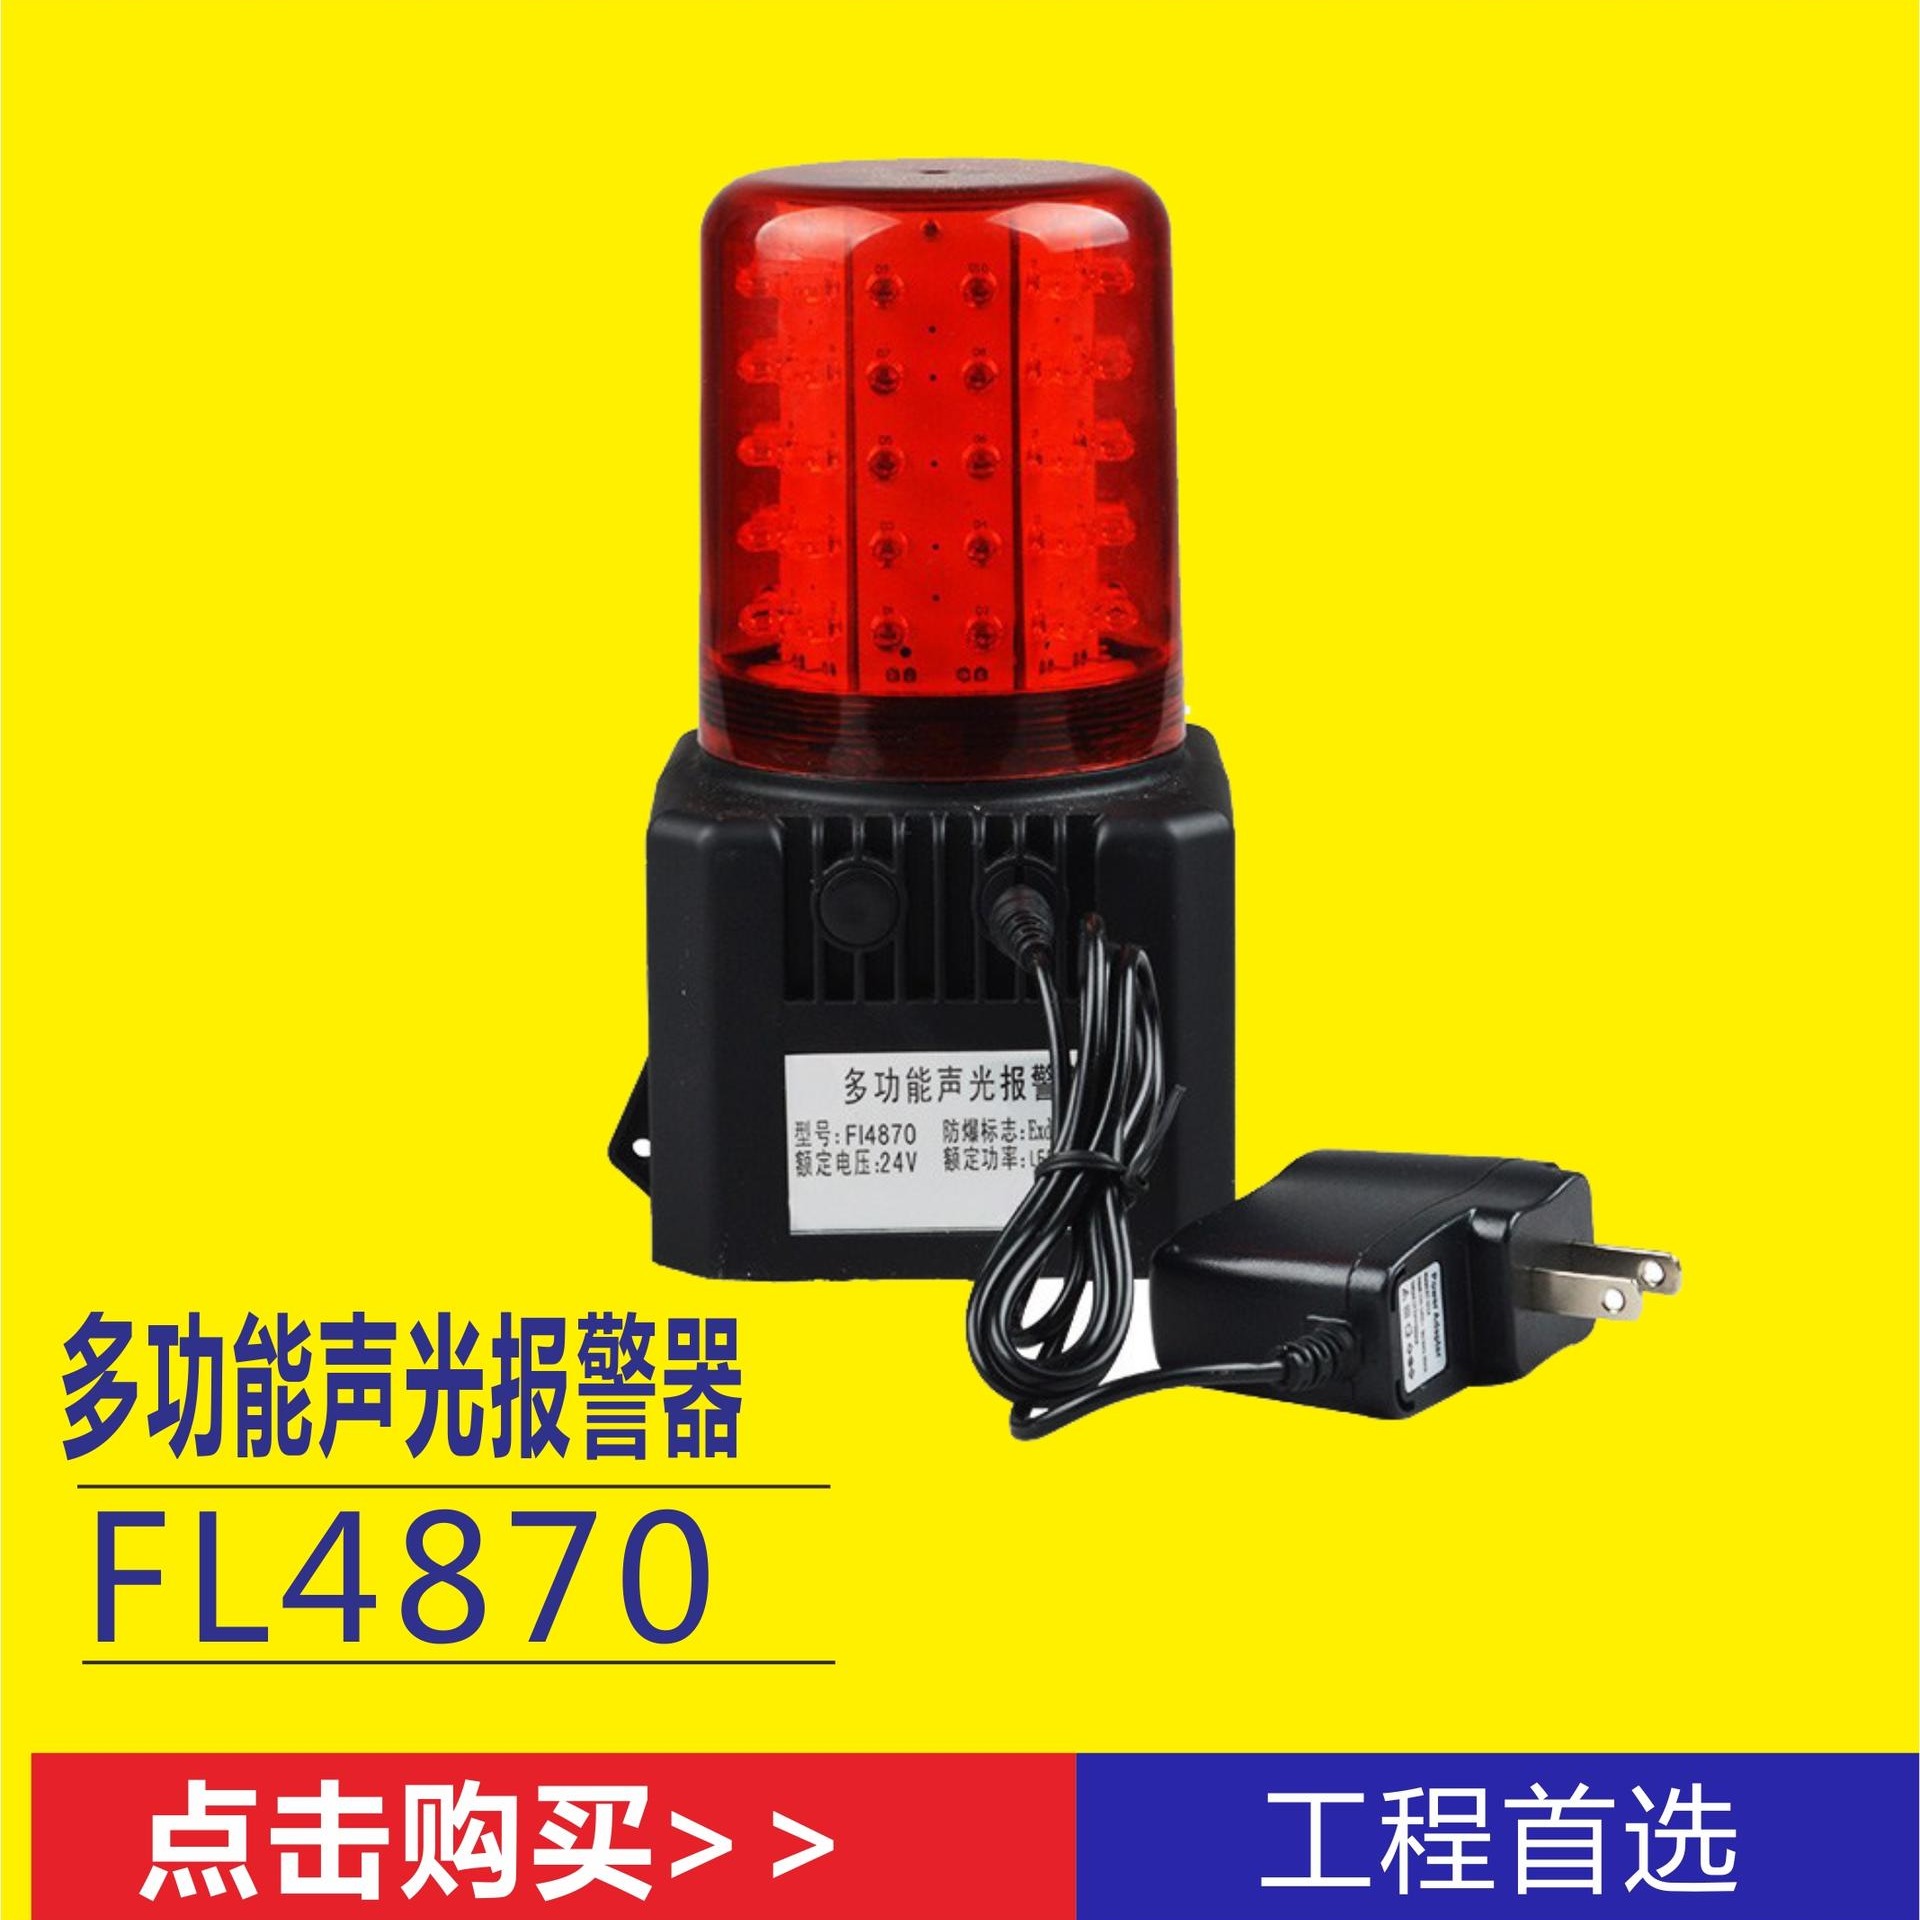 BQ2701强力吸附底座信号指示灯 带声音呼叫信号指示器 各种抢险施工场所安全信号灯 交通运输业新型红色LED灯